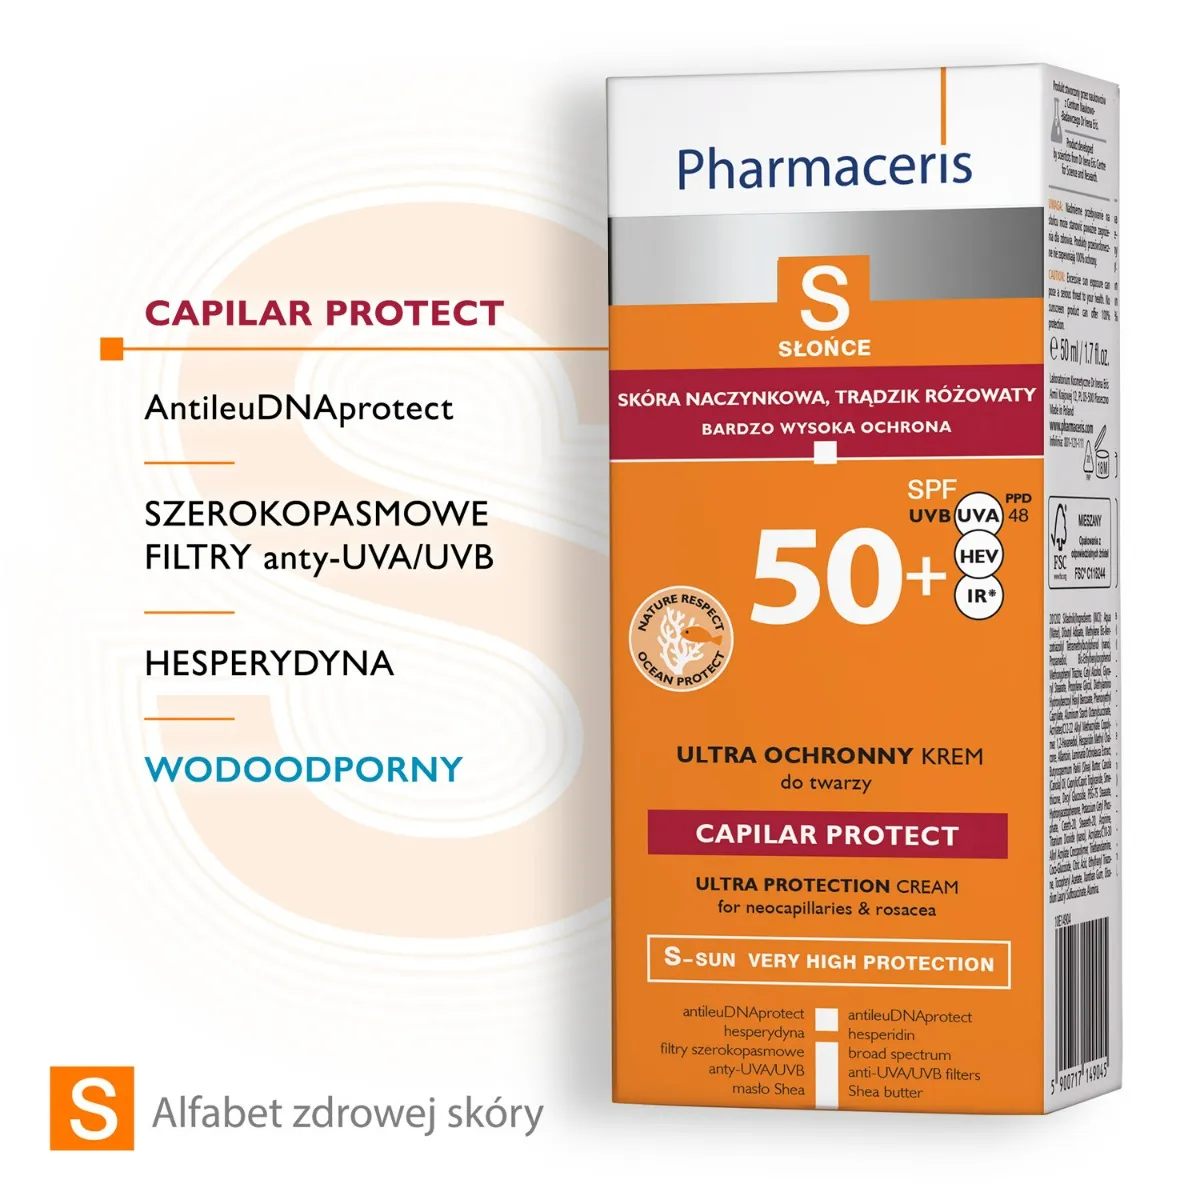 Pharmaceris S Capilar & Sun Protect, krem ochronny dla skóry naczynkowej i z trądzikiem różowatym SPF 50+, 50 ml 